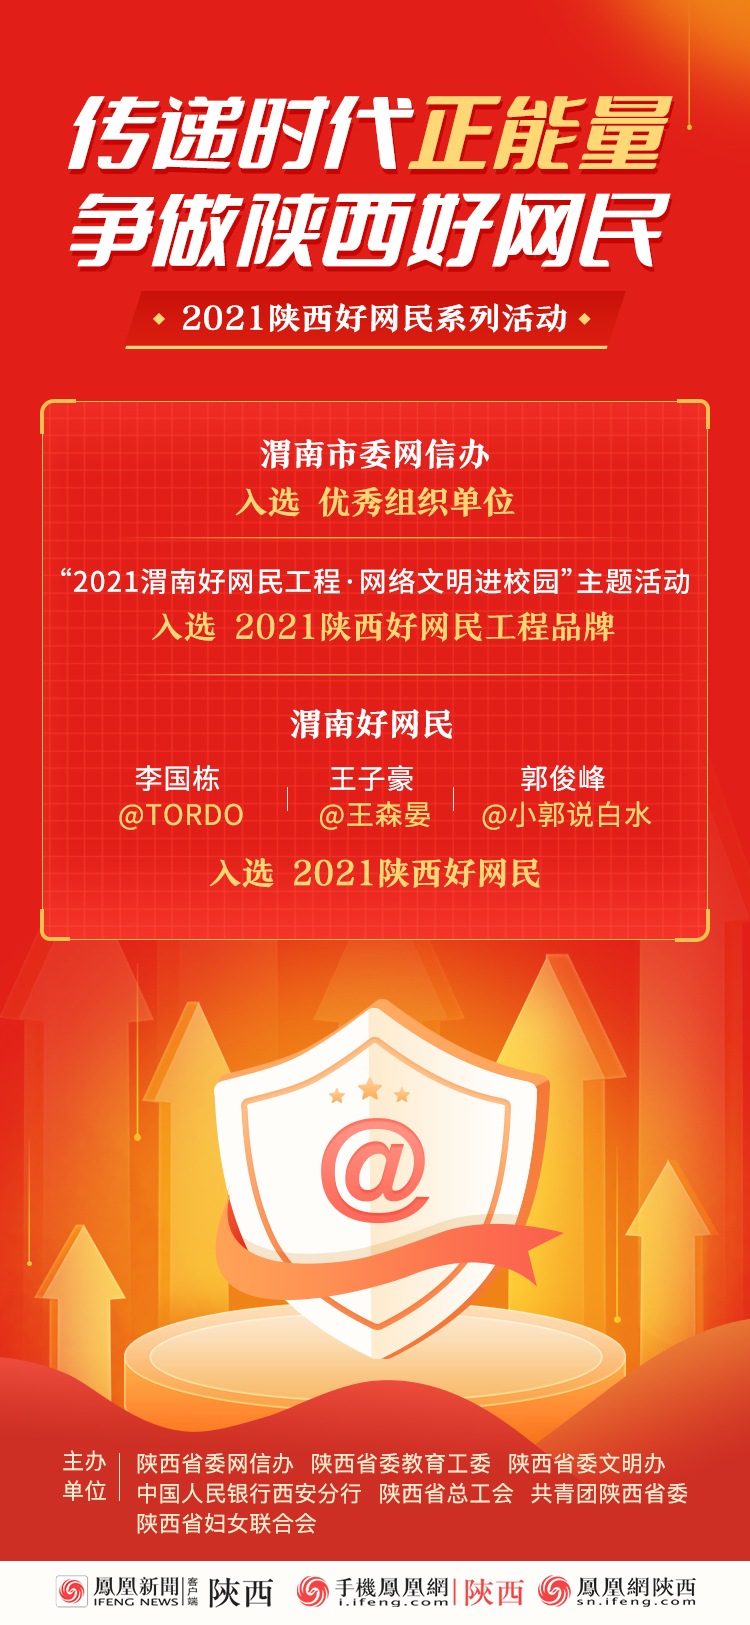 渭南市委网信办入选2021陕西好网民活动优秀组织单位